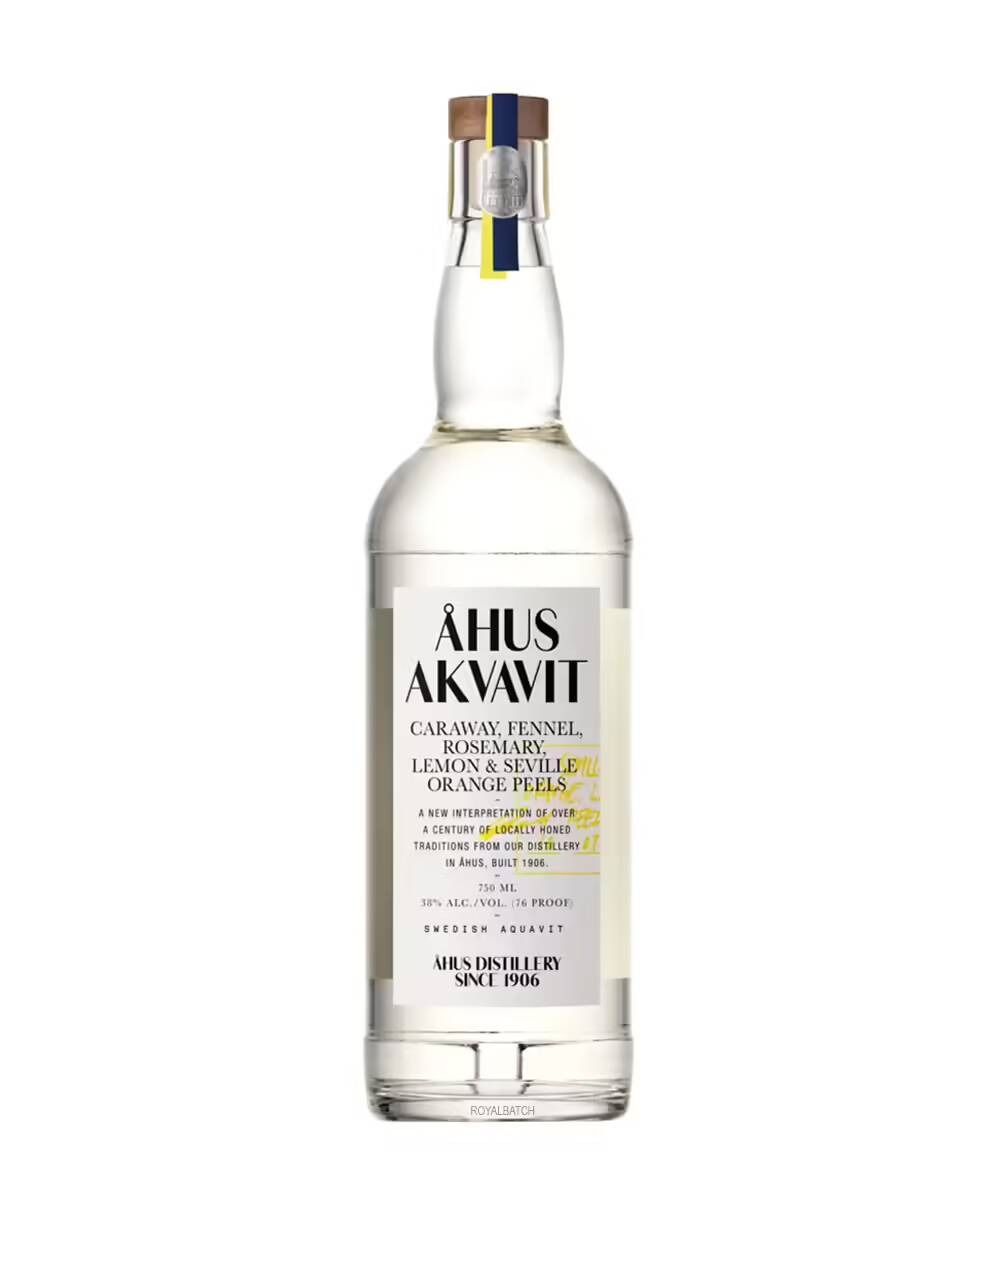 Ahus Akvavit Swedish Aquavit Vodka